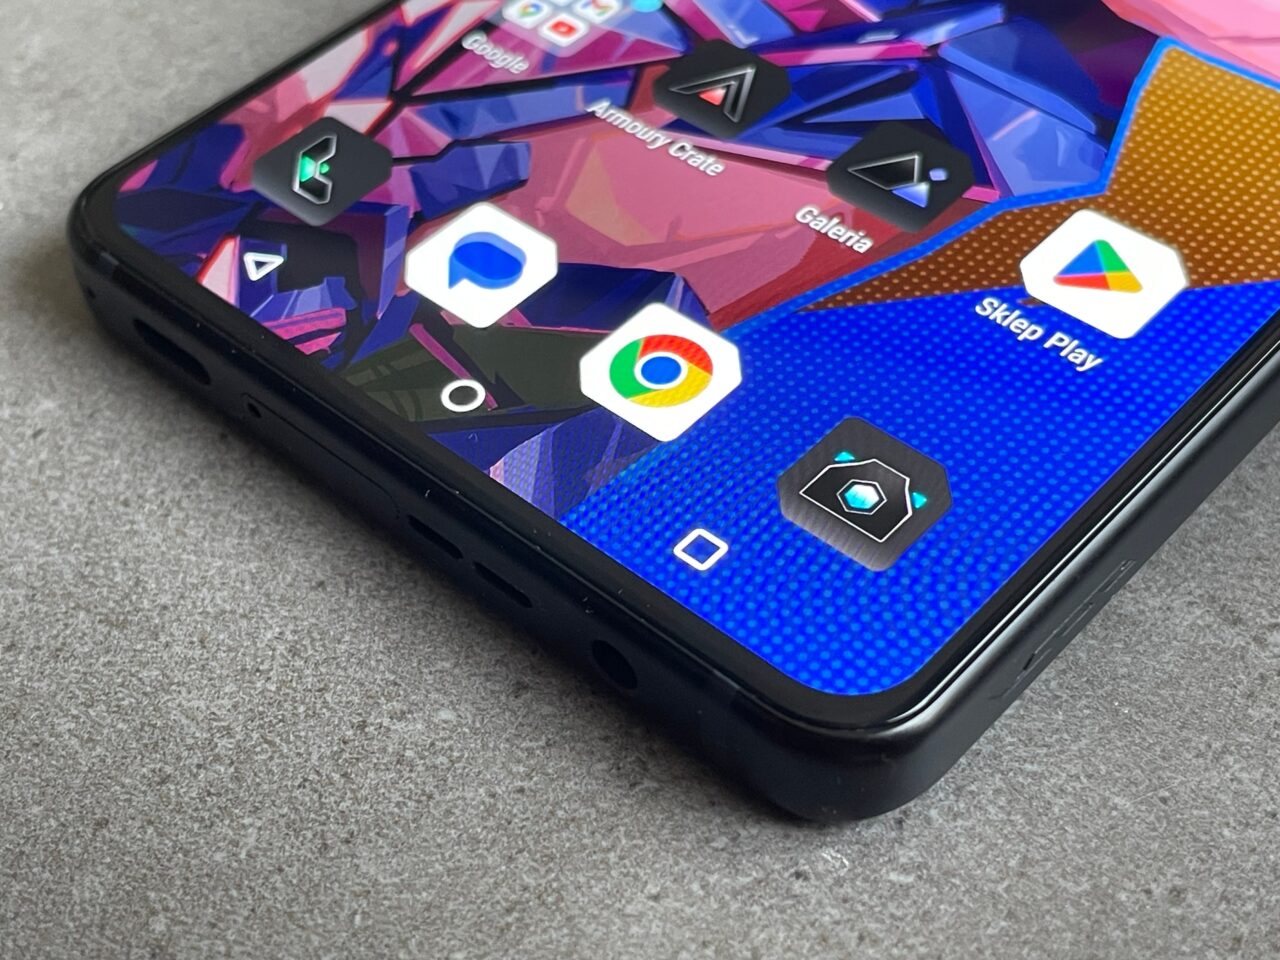 Część przednia smartfona z widocznymi kolorowymi ikonami aplikacji na tle abstrakcyjnej tapety, w tym ikona Sklepu Play, na blacie z szarą tkaniną.